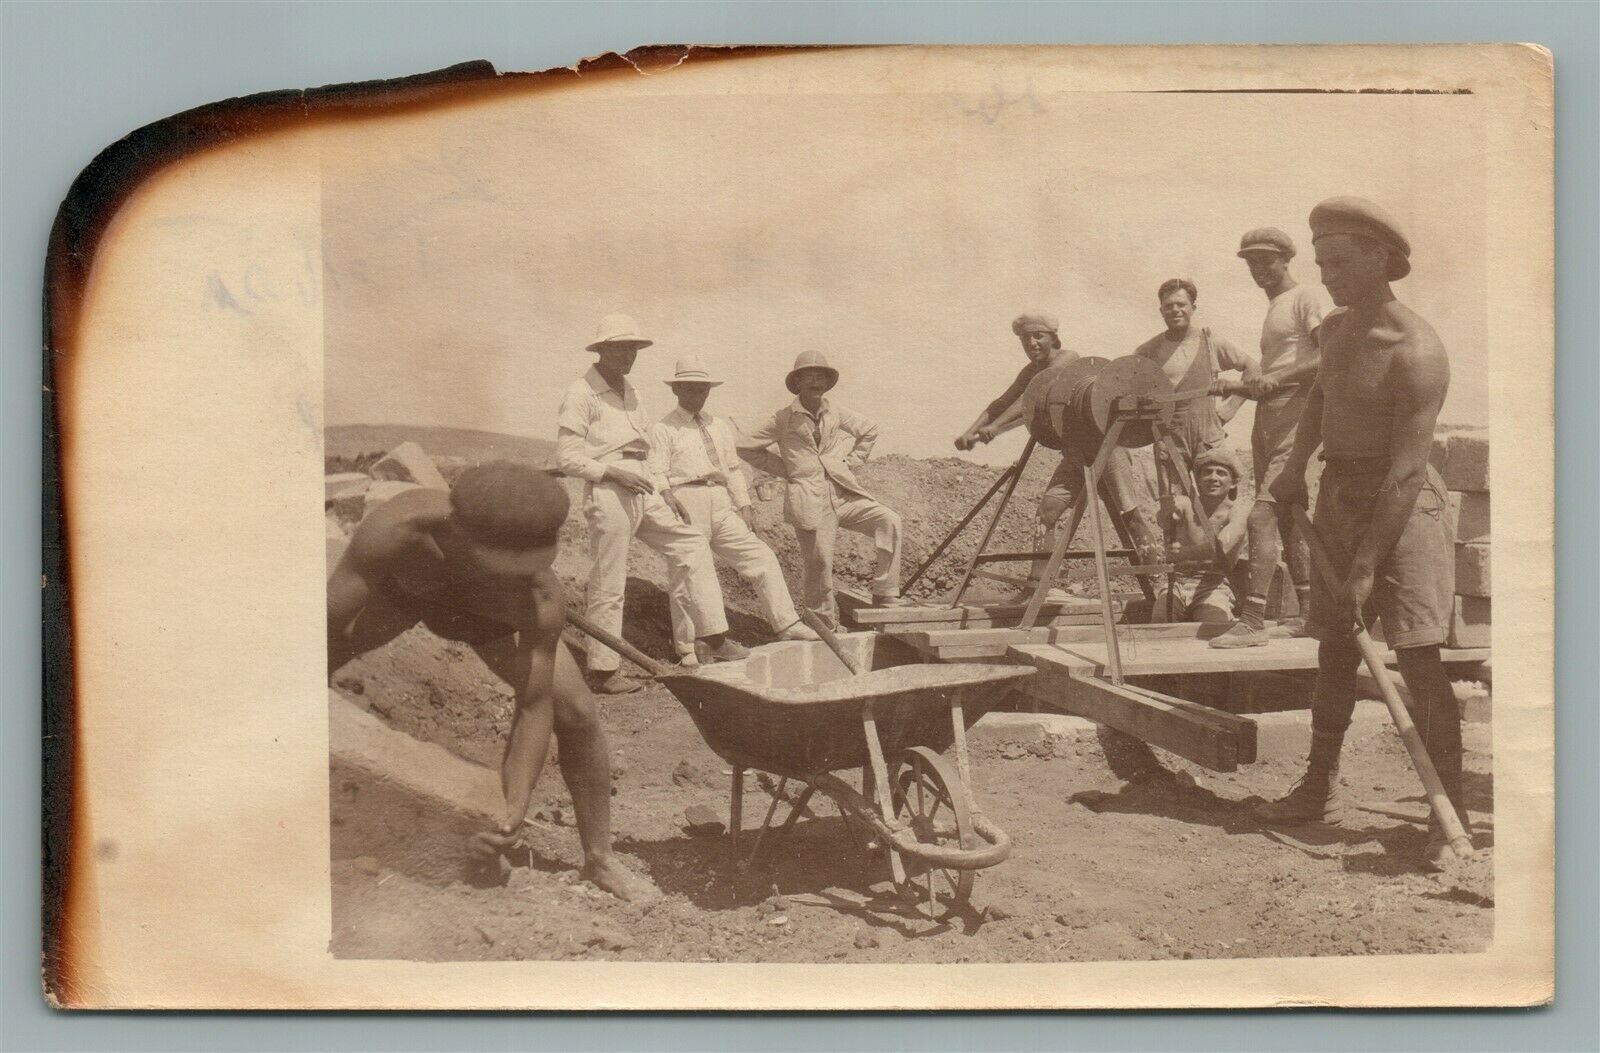 1926 EARLY PALESTINE ISRAEL WORKERS VINTAGE REAL PHOTO POSTCARD RPPC JUDAICA